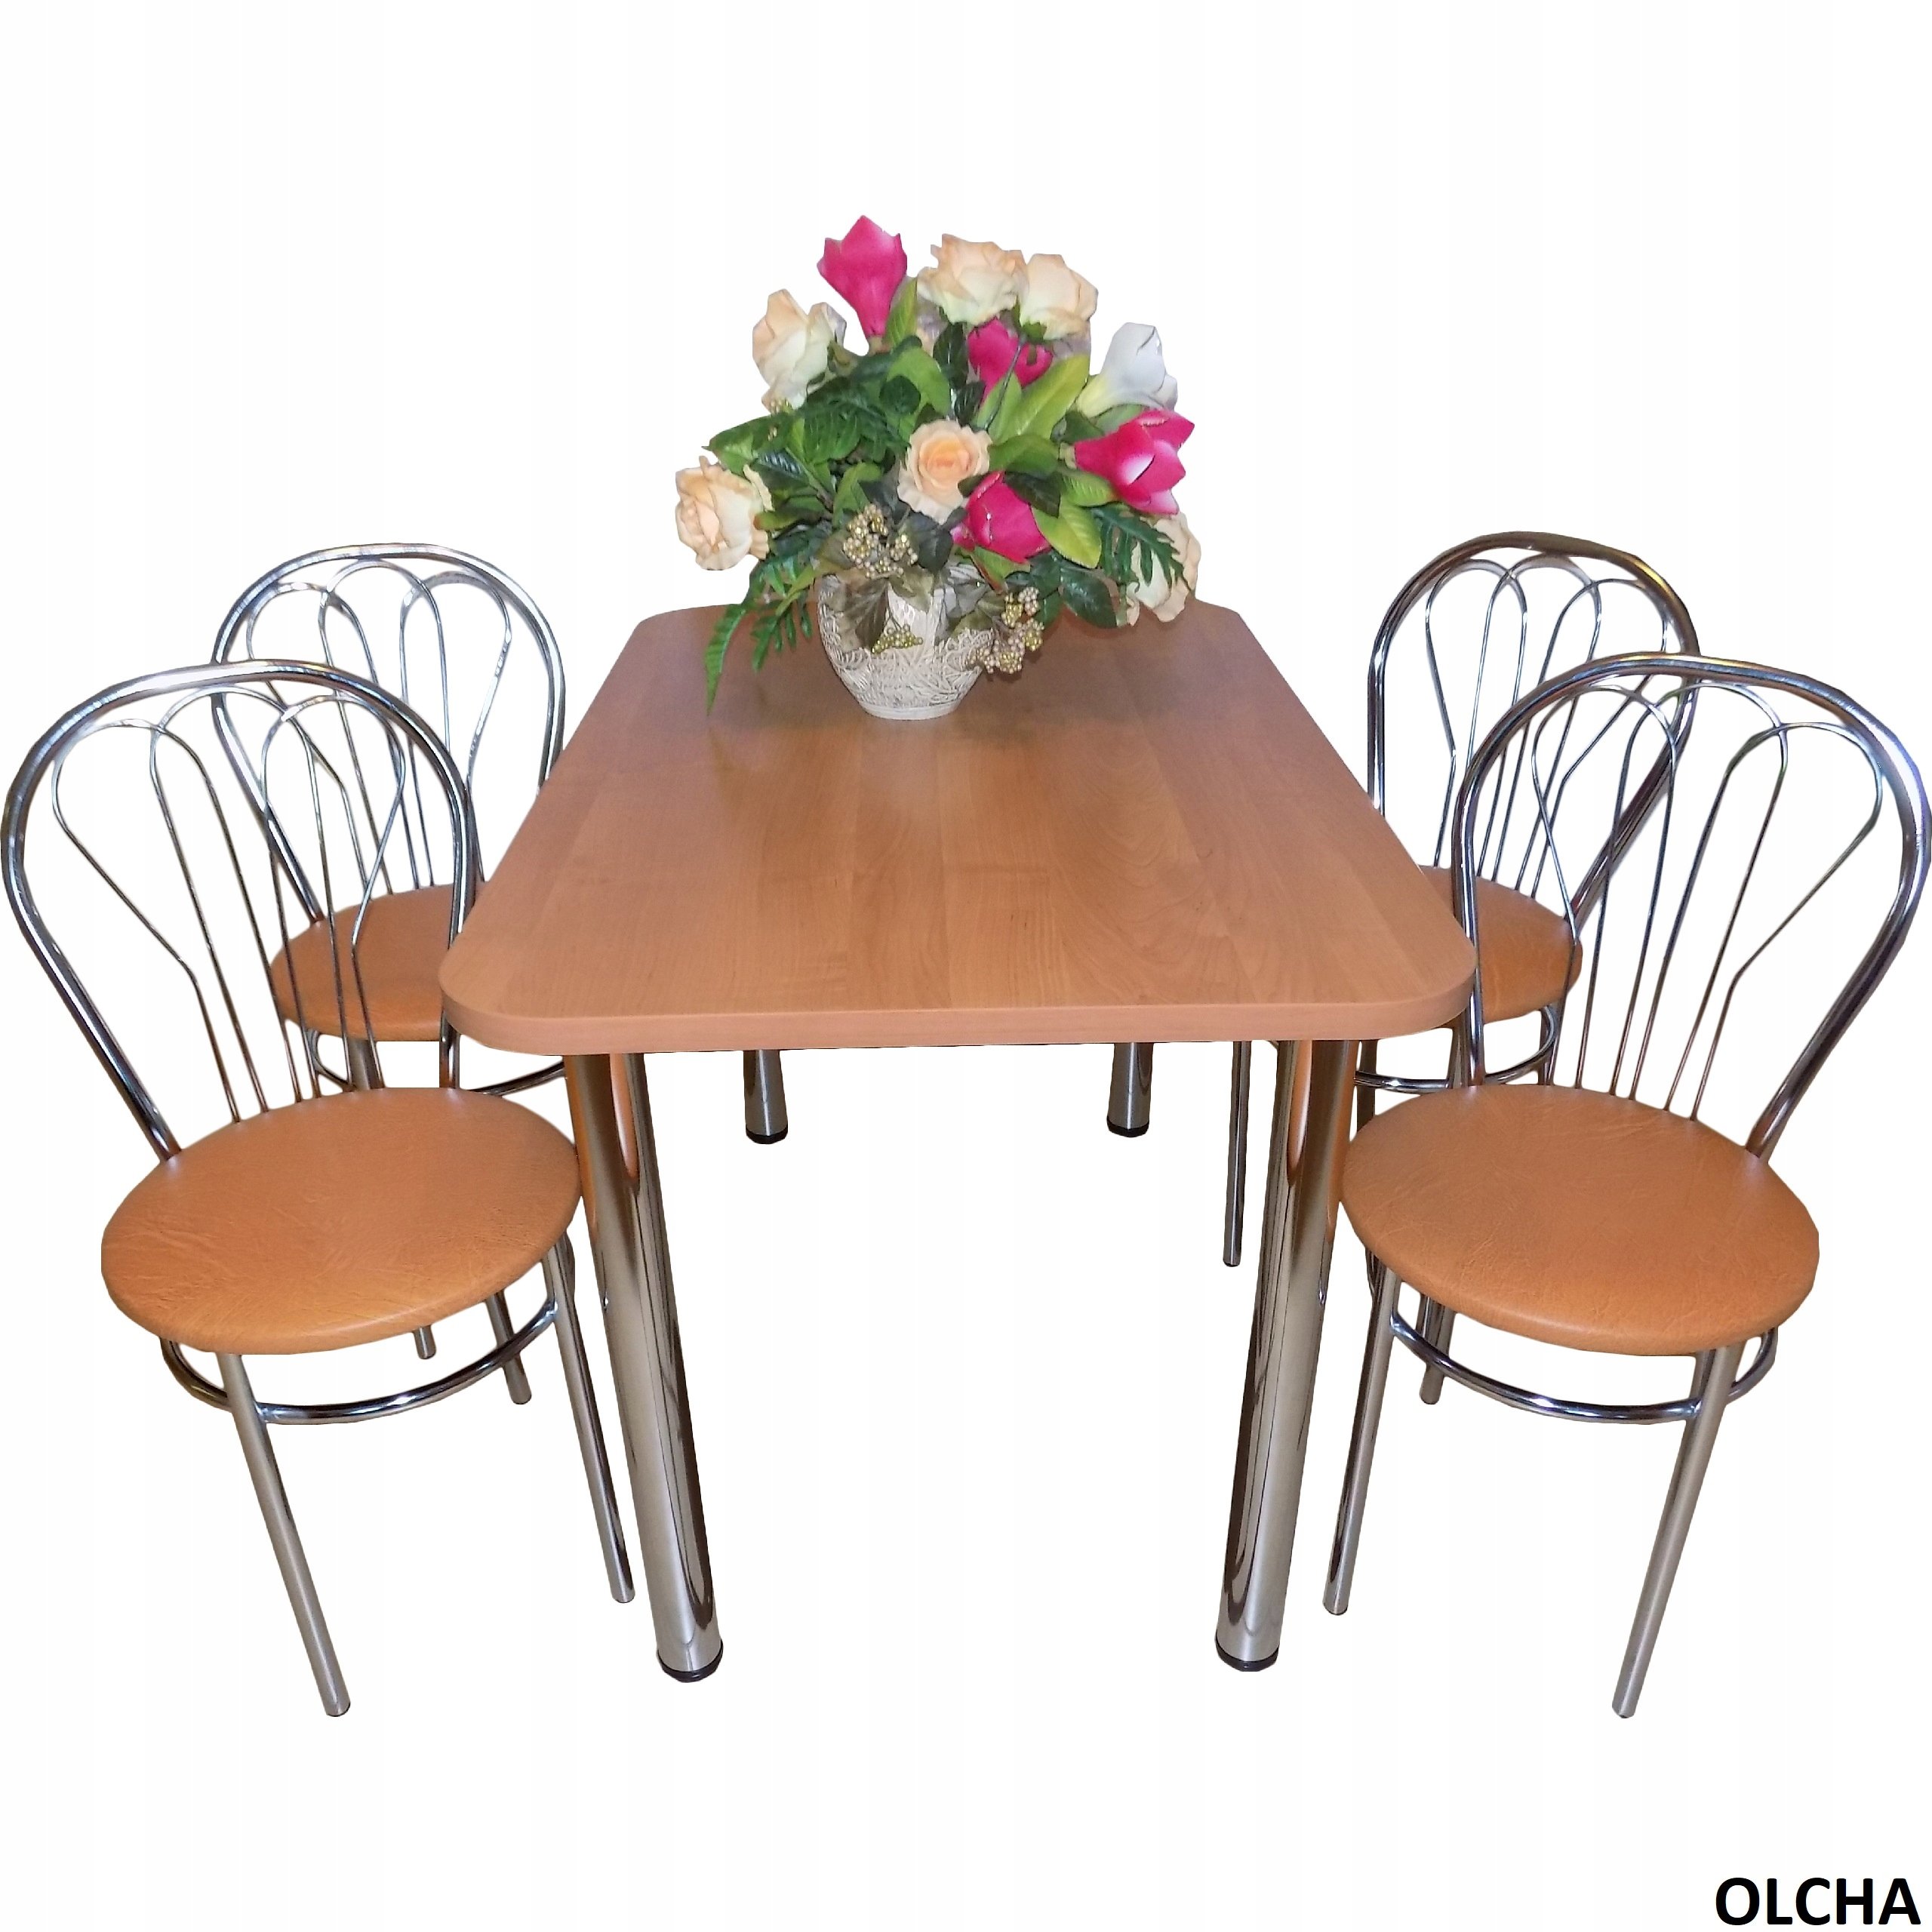 Купить кухонные стулья комплект. Кухонный стол и стулья. Кухонный набор стол и стулья. Кухонный столик со стульями. Кухонный стол и стулья комплект.